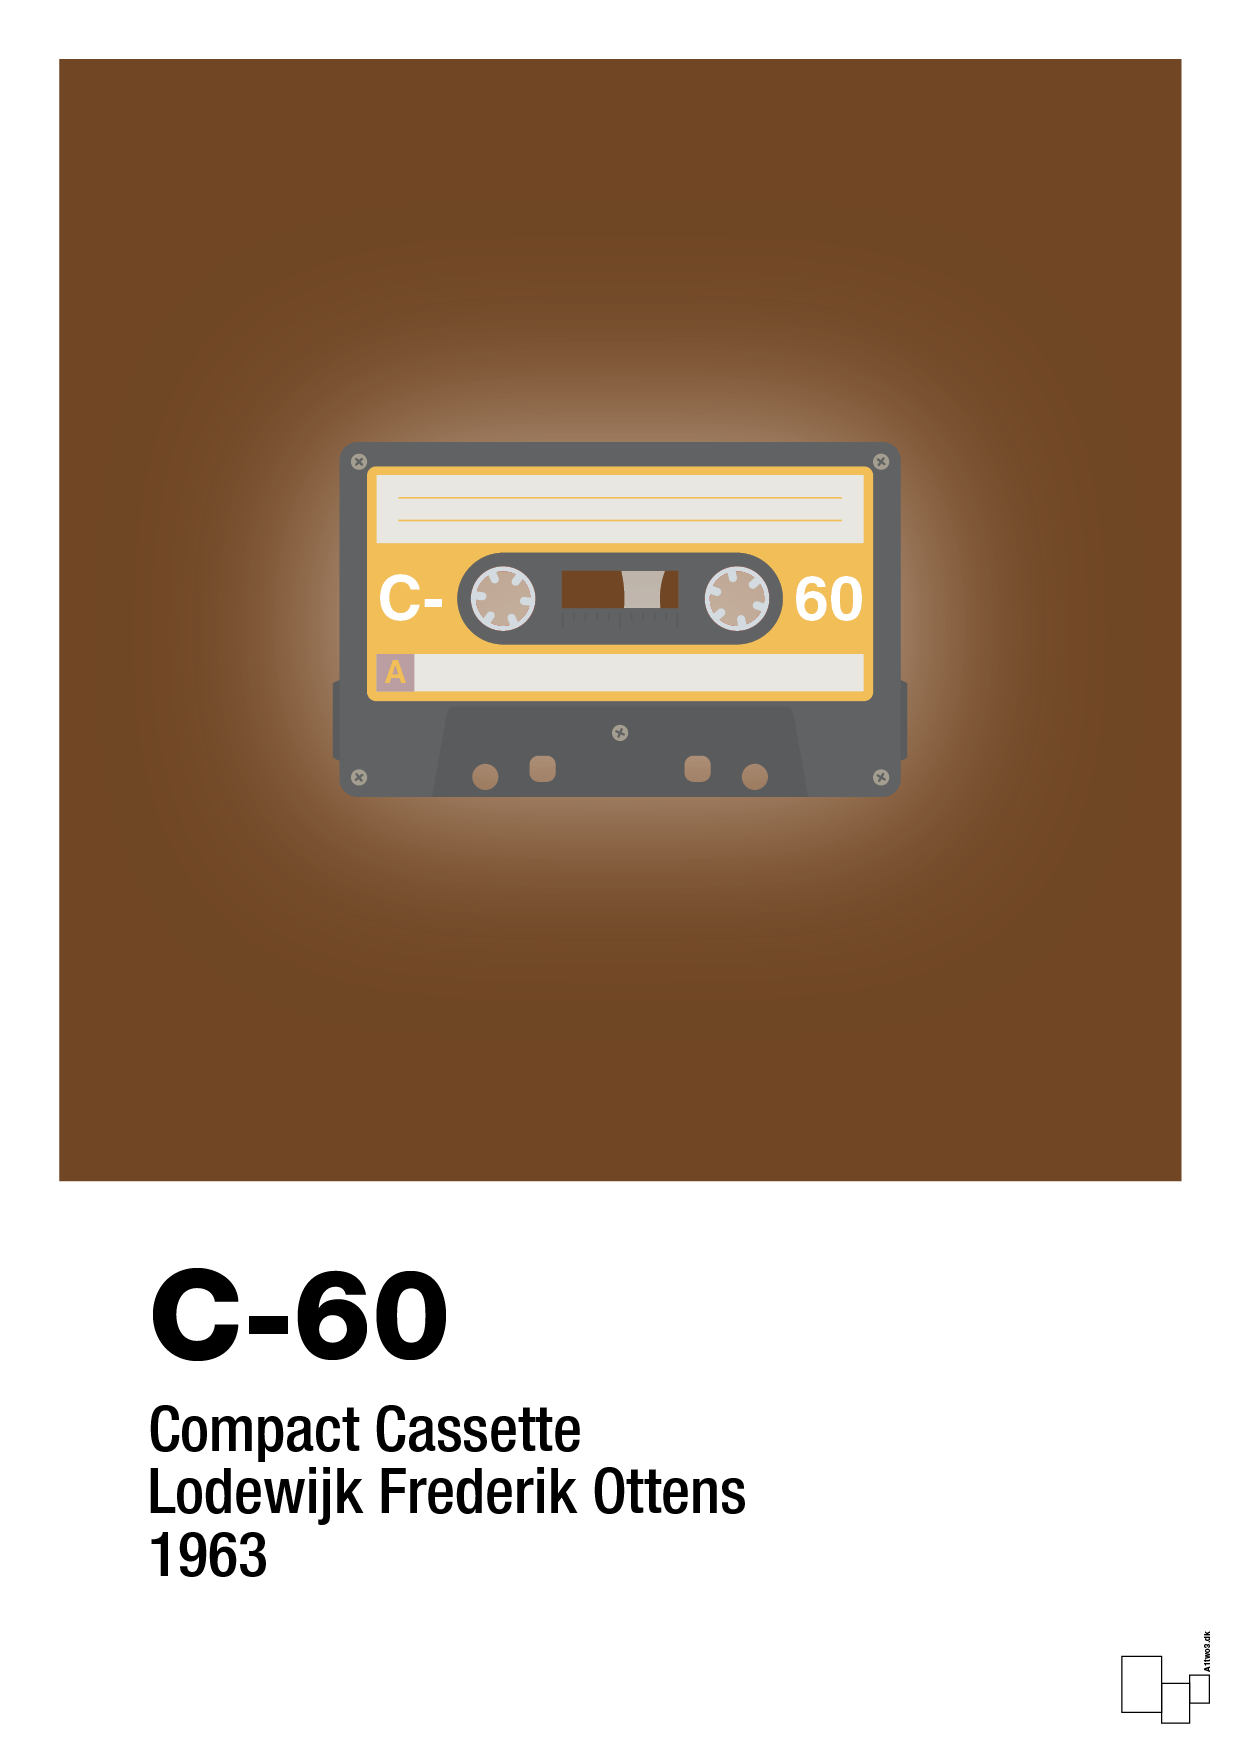 kassettebånd c-60 - Plakat med Grafik i Dark Brown